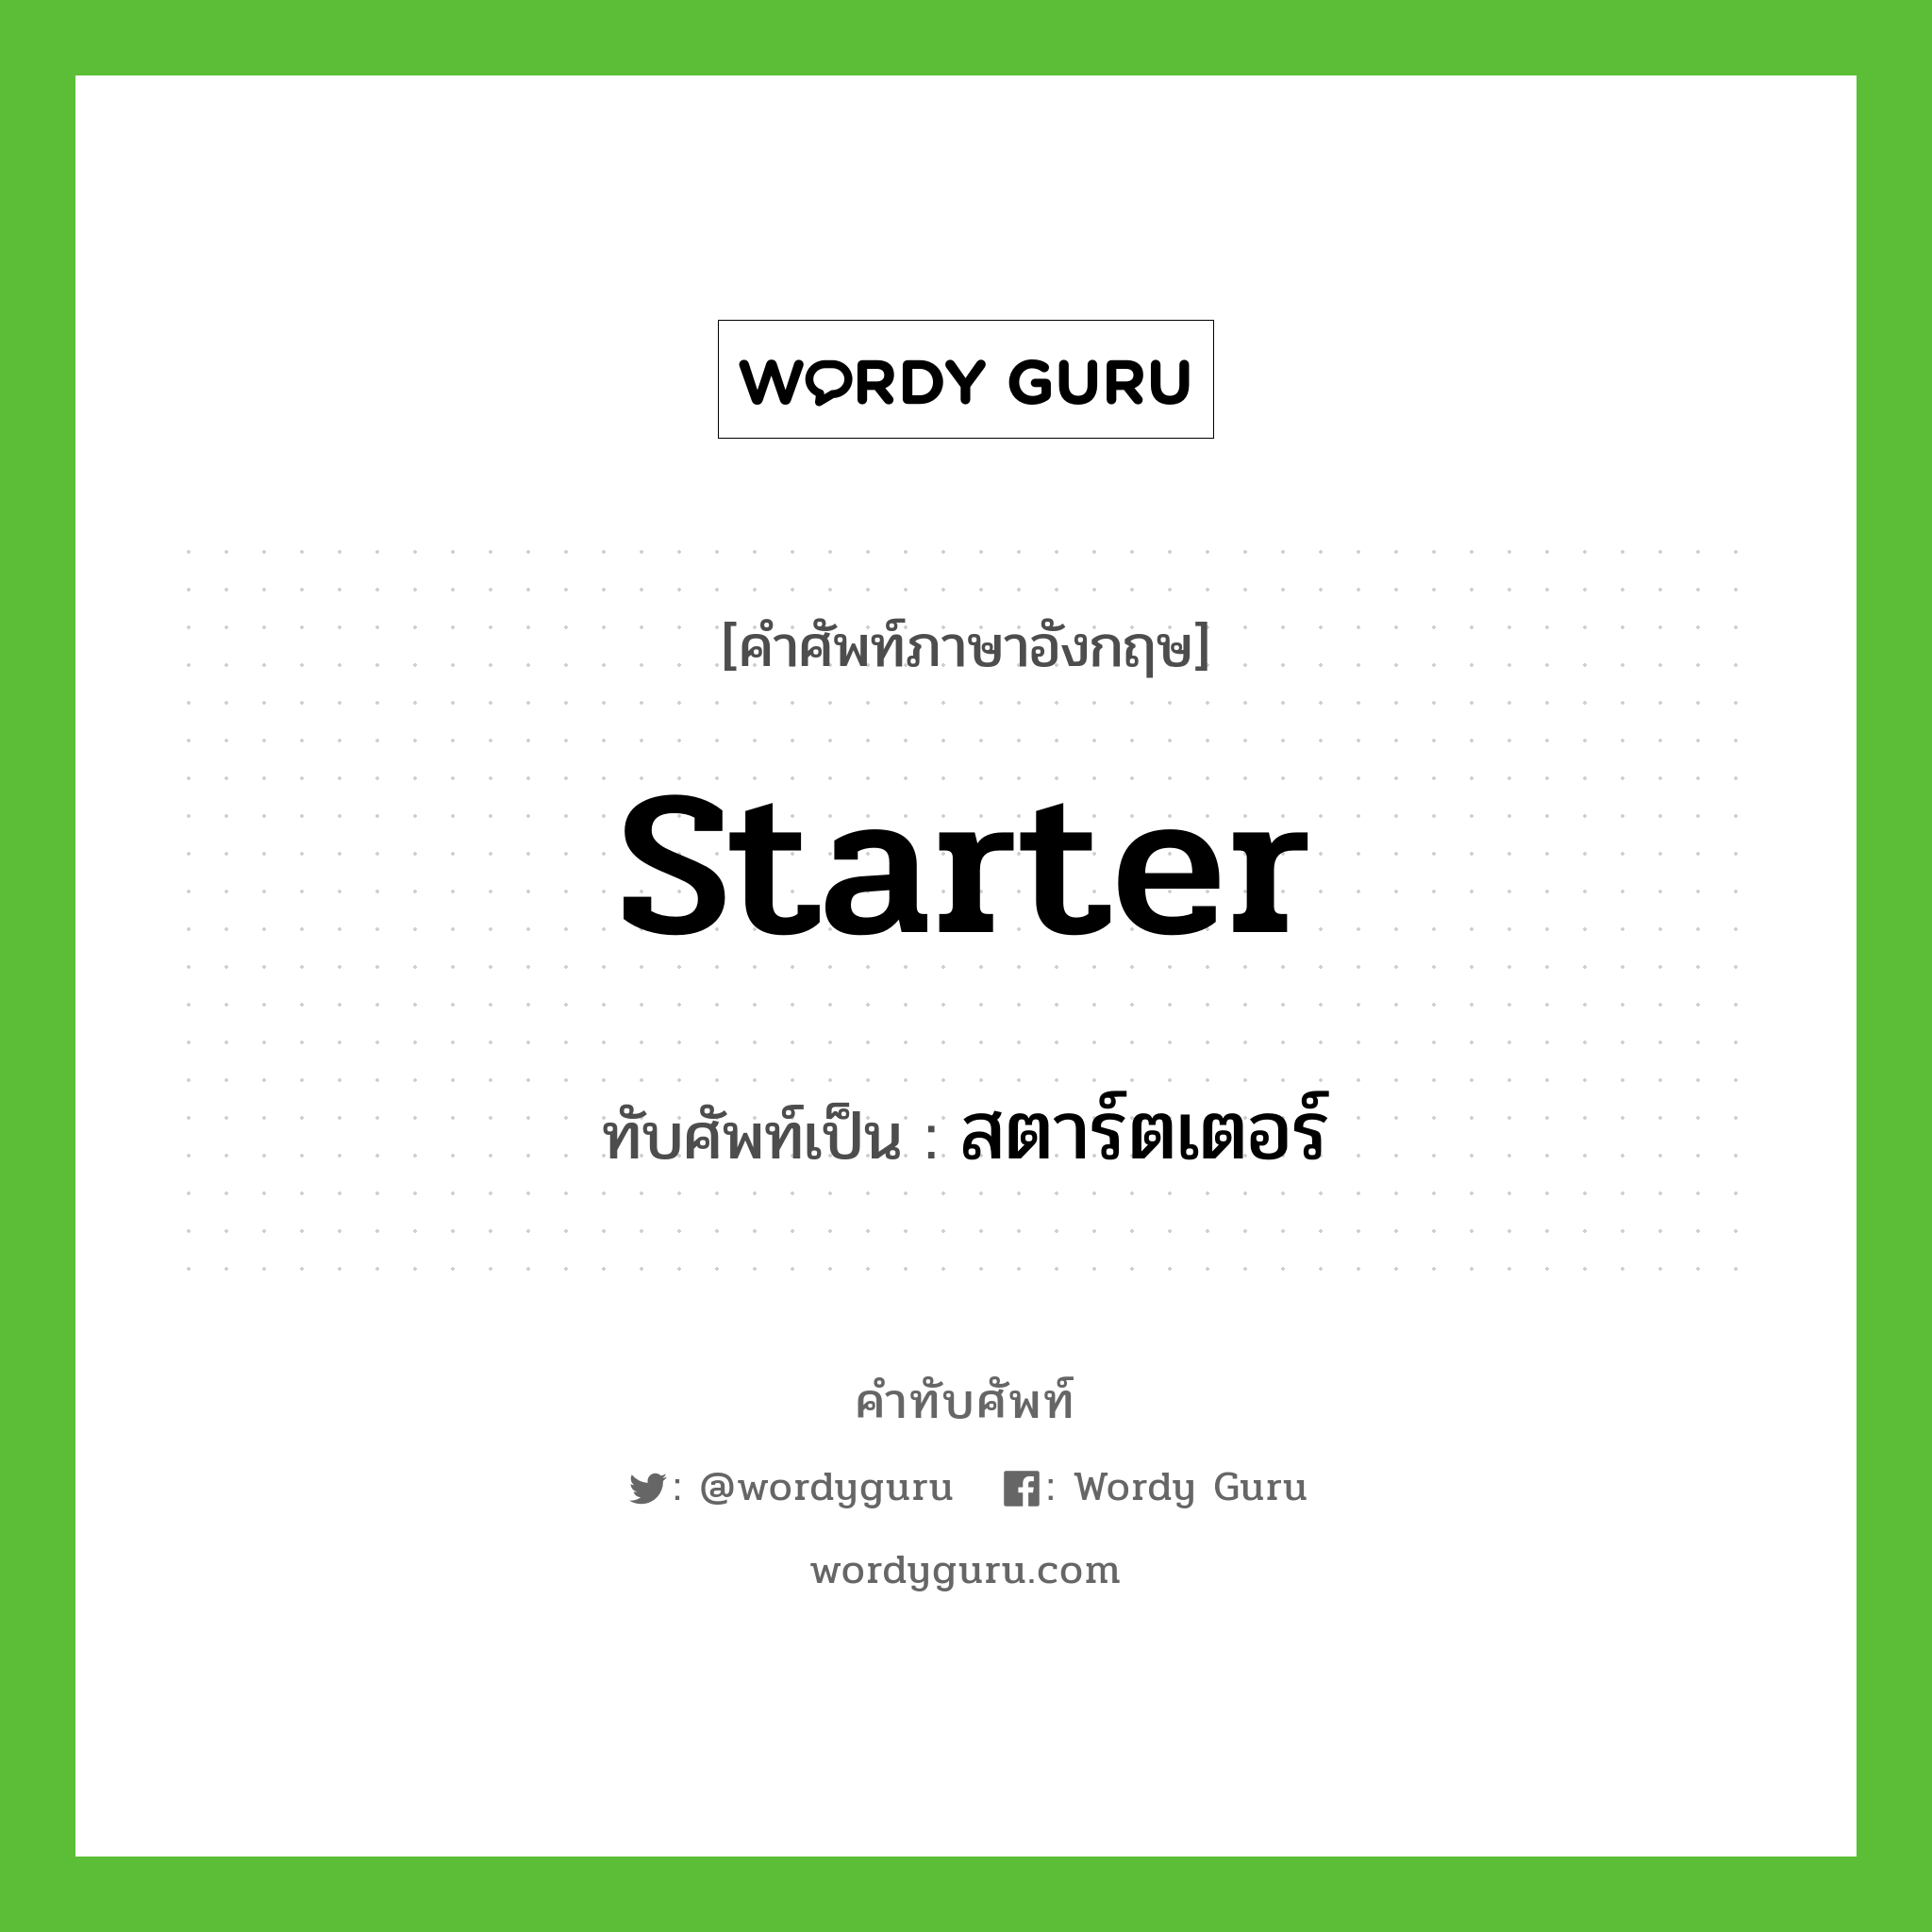 starter เขียนเป็นคำไทยว่าอะไร?, คำศัพท์ภาษาอังกฤษ starter ทับศัพท์เป็น สตาร์ตเตอร์